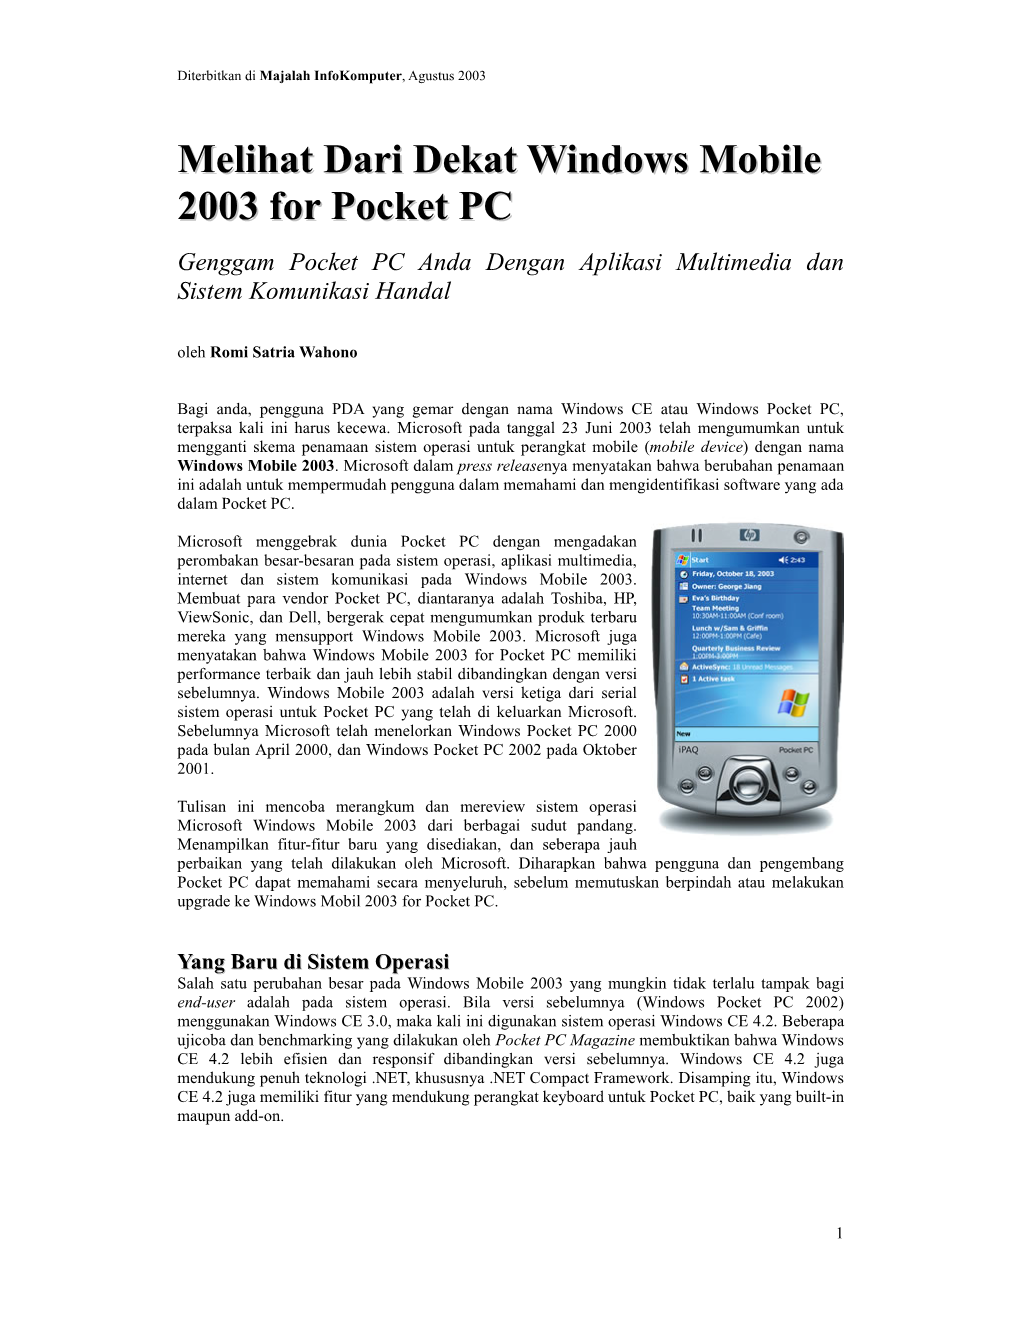 Melihat Dari Dekat Windows Mobile 2003 for Pocket PC